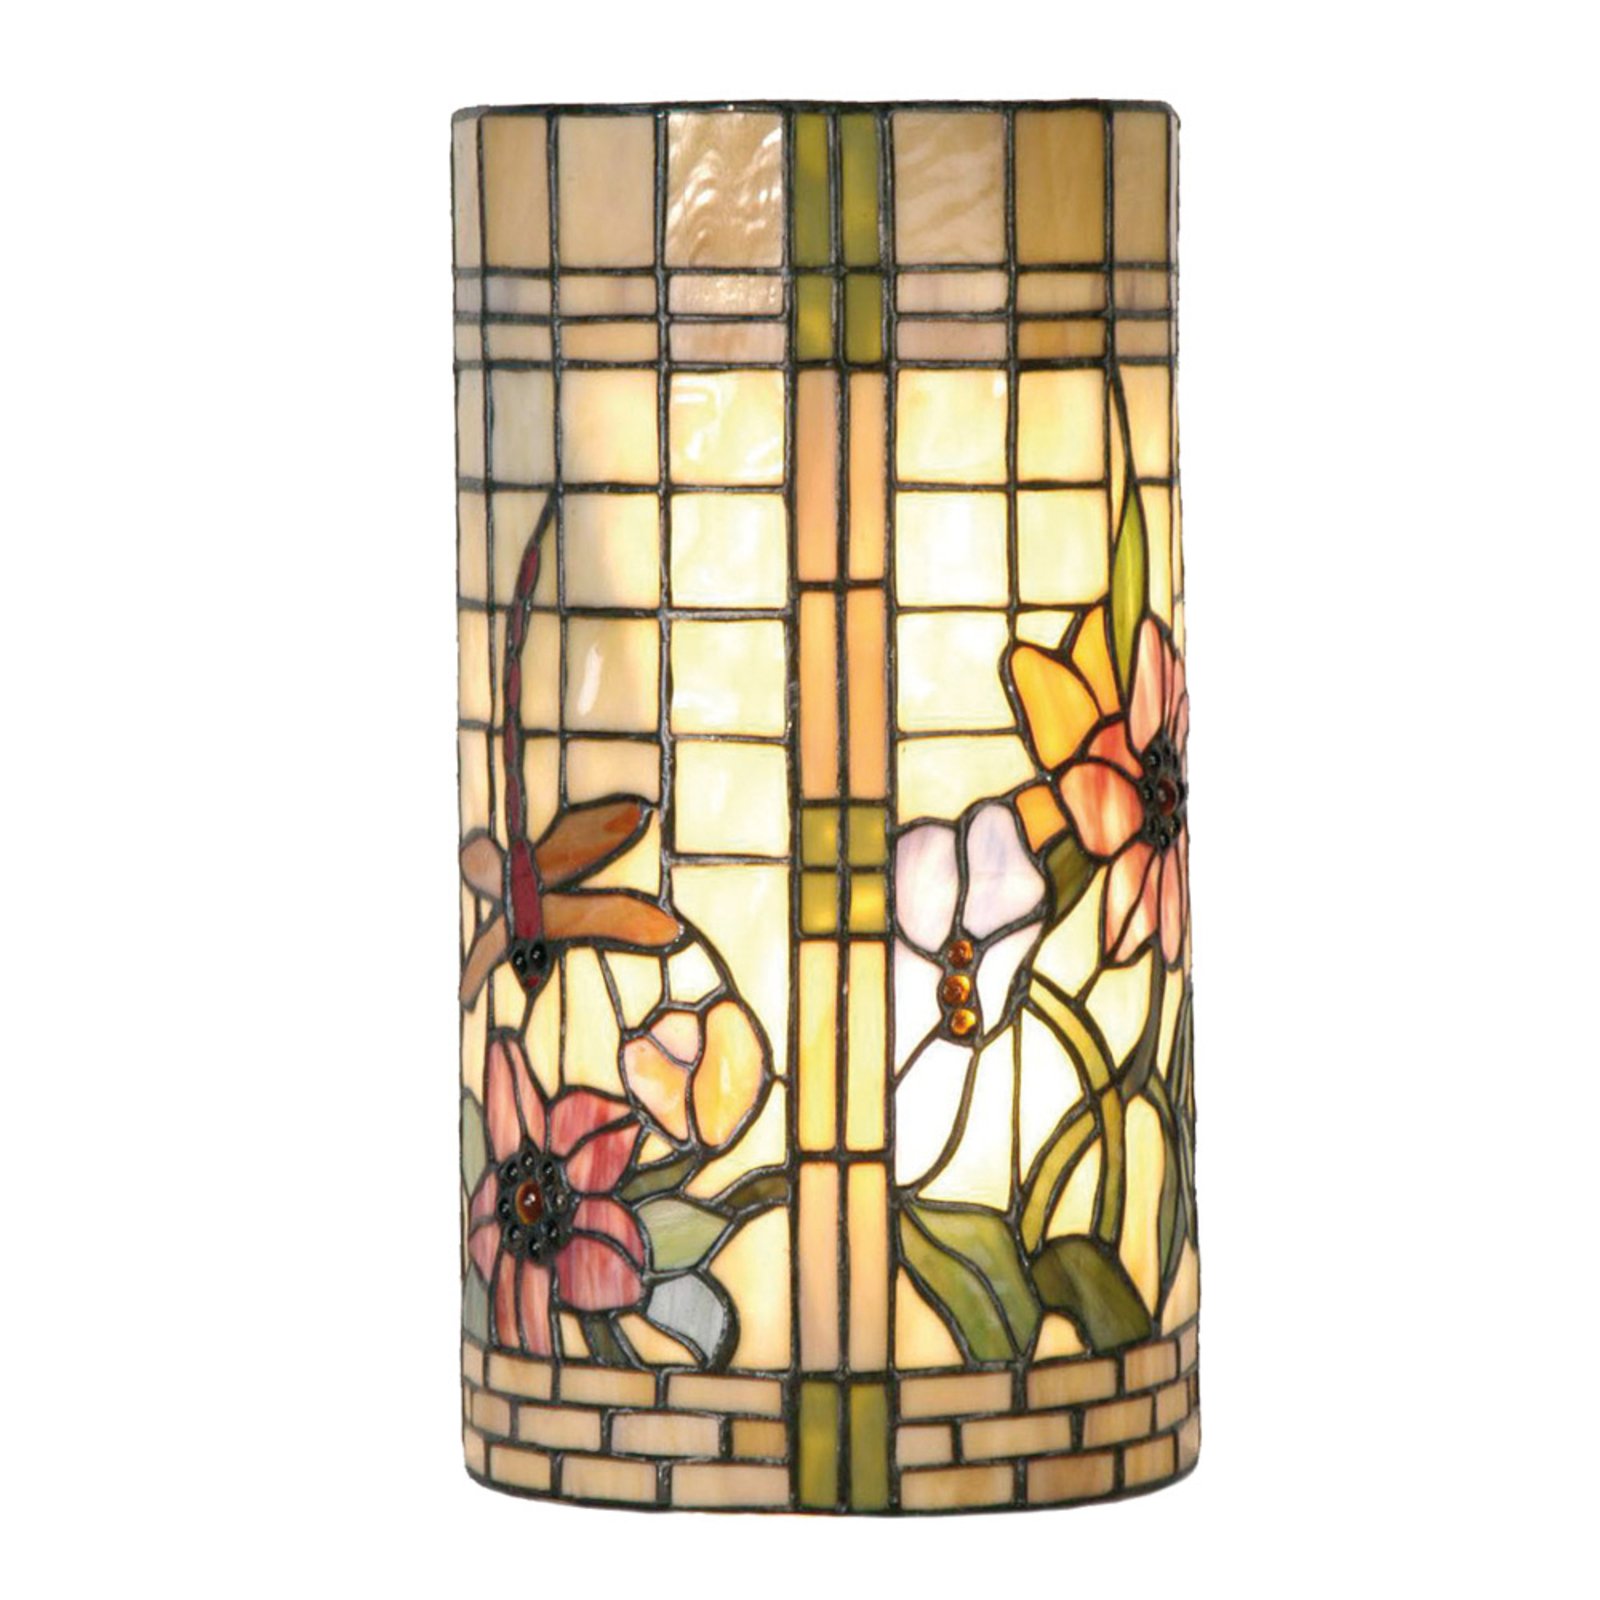 Cvjetna zidna lampa Hannah u Tiffany stilu